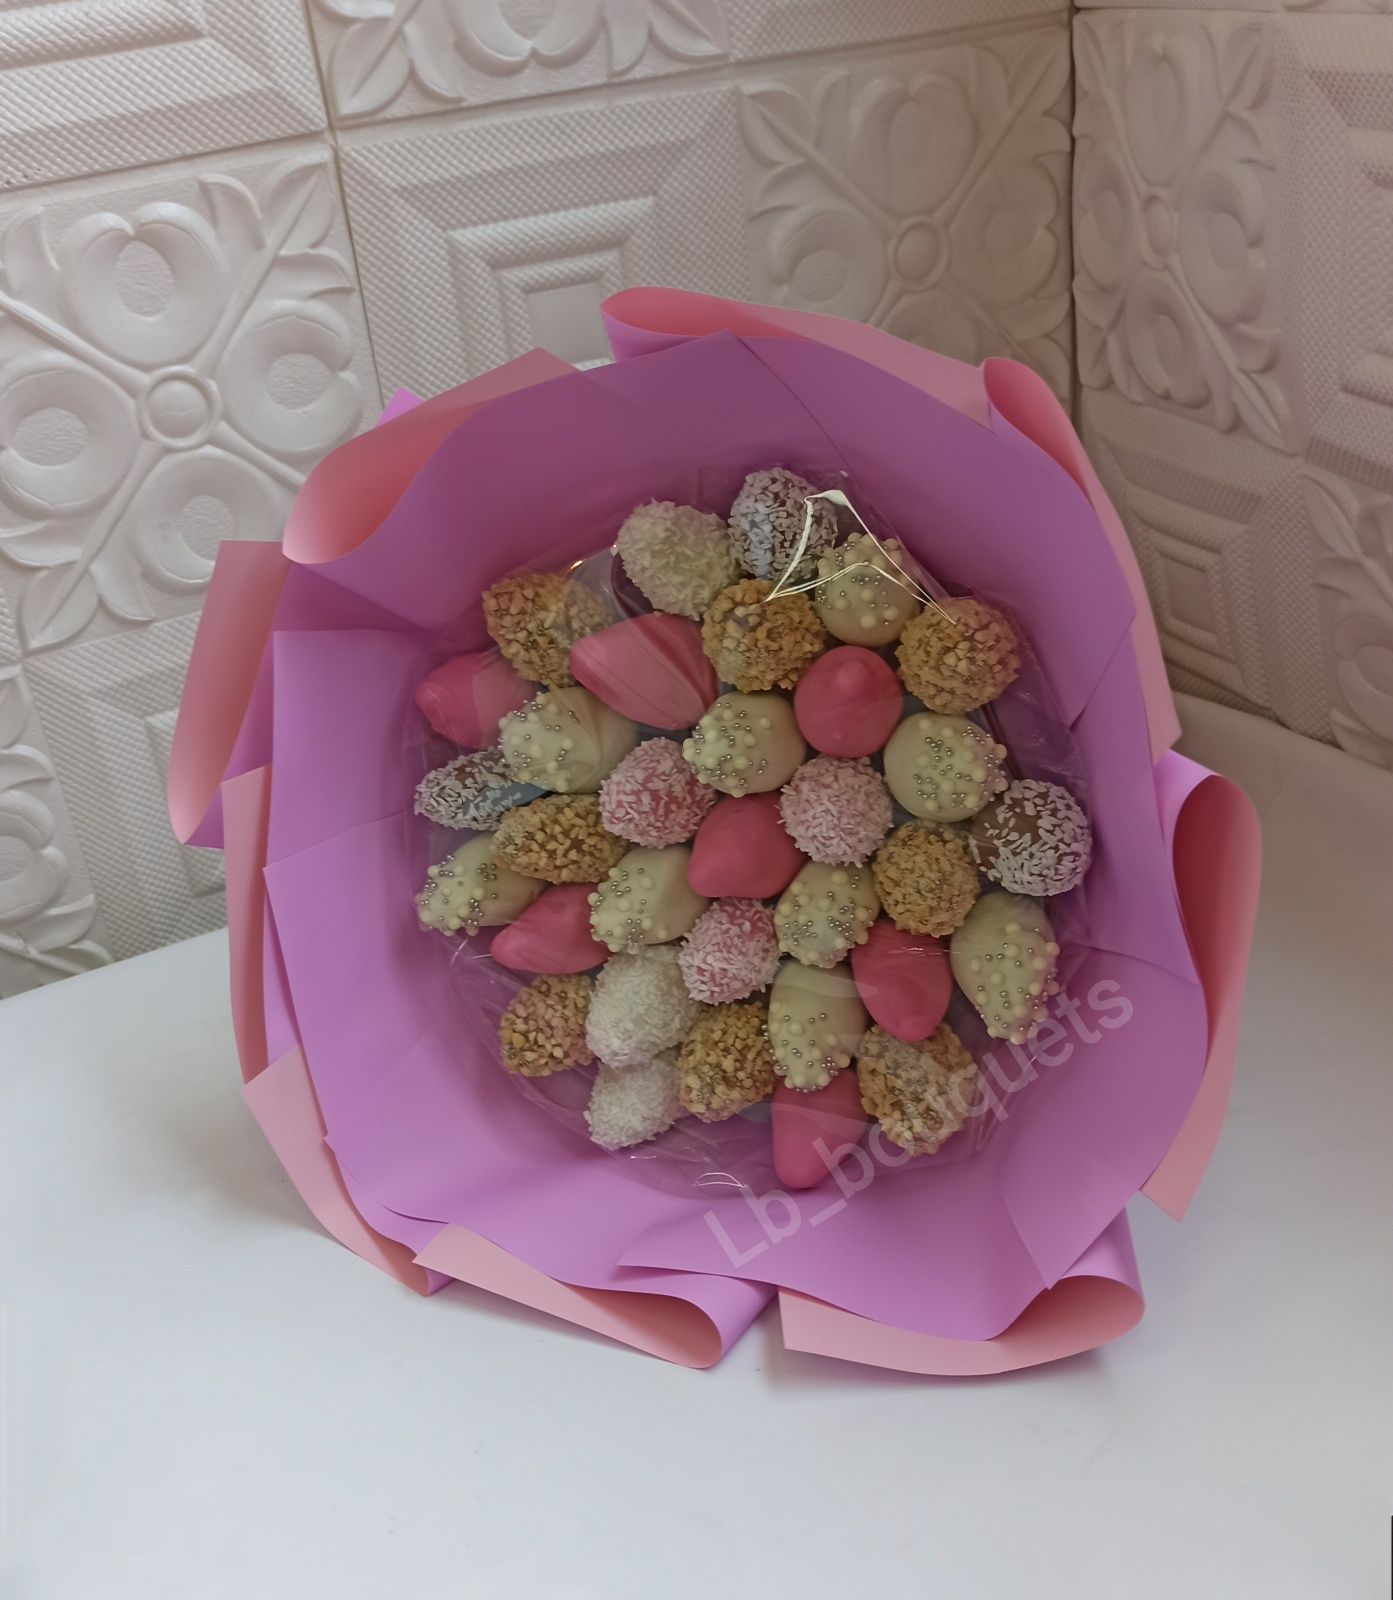 клубника в шоколаде подарок торт  букет из клубники гул, демерт, цвет